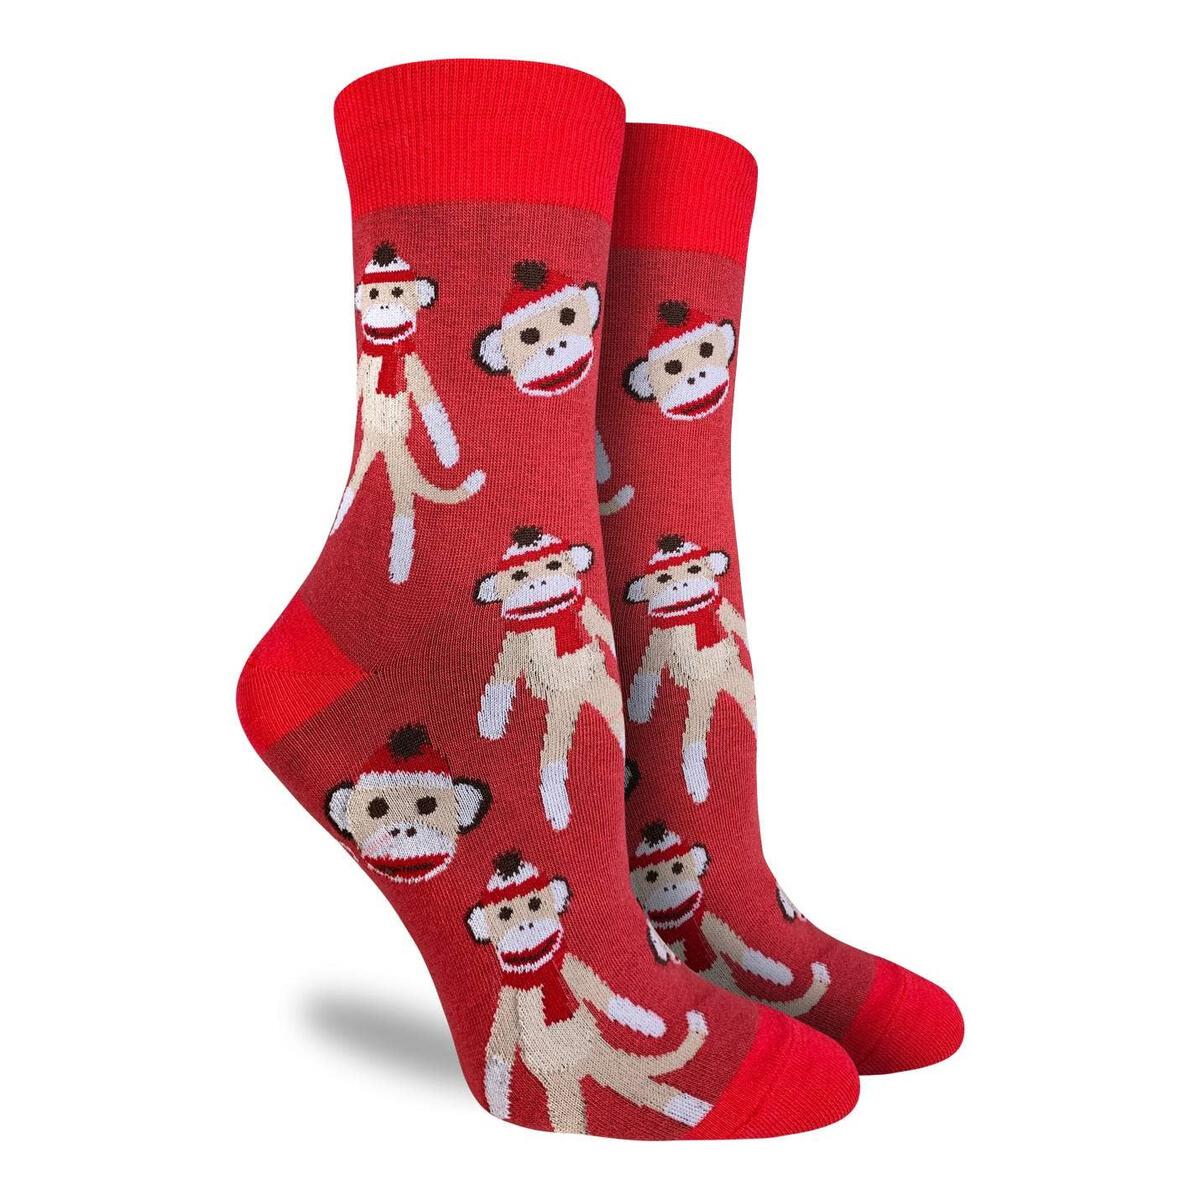 Sock Monkeys